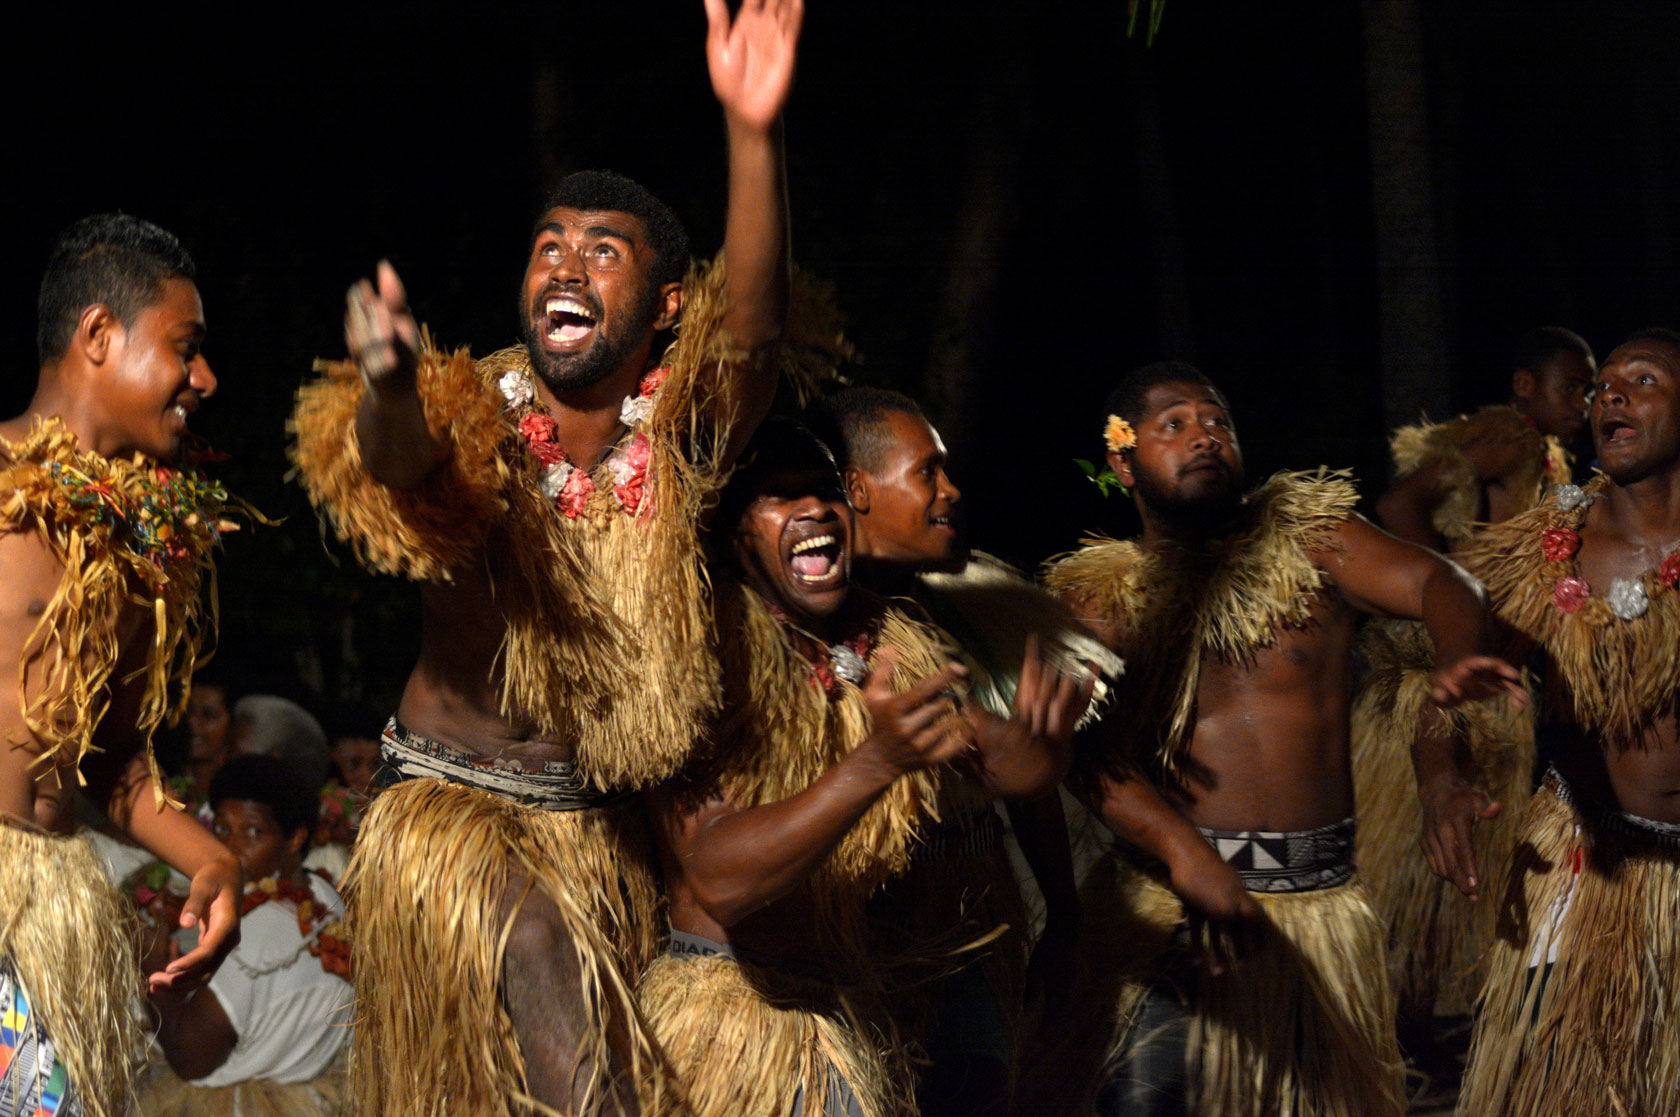 Fijian men dancing a traditional dance